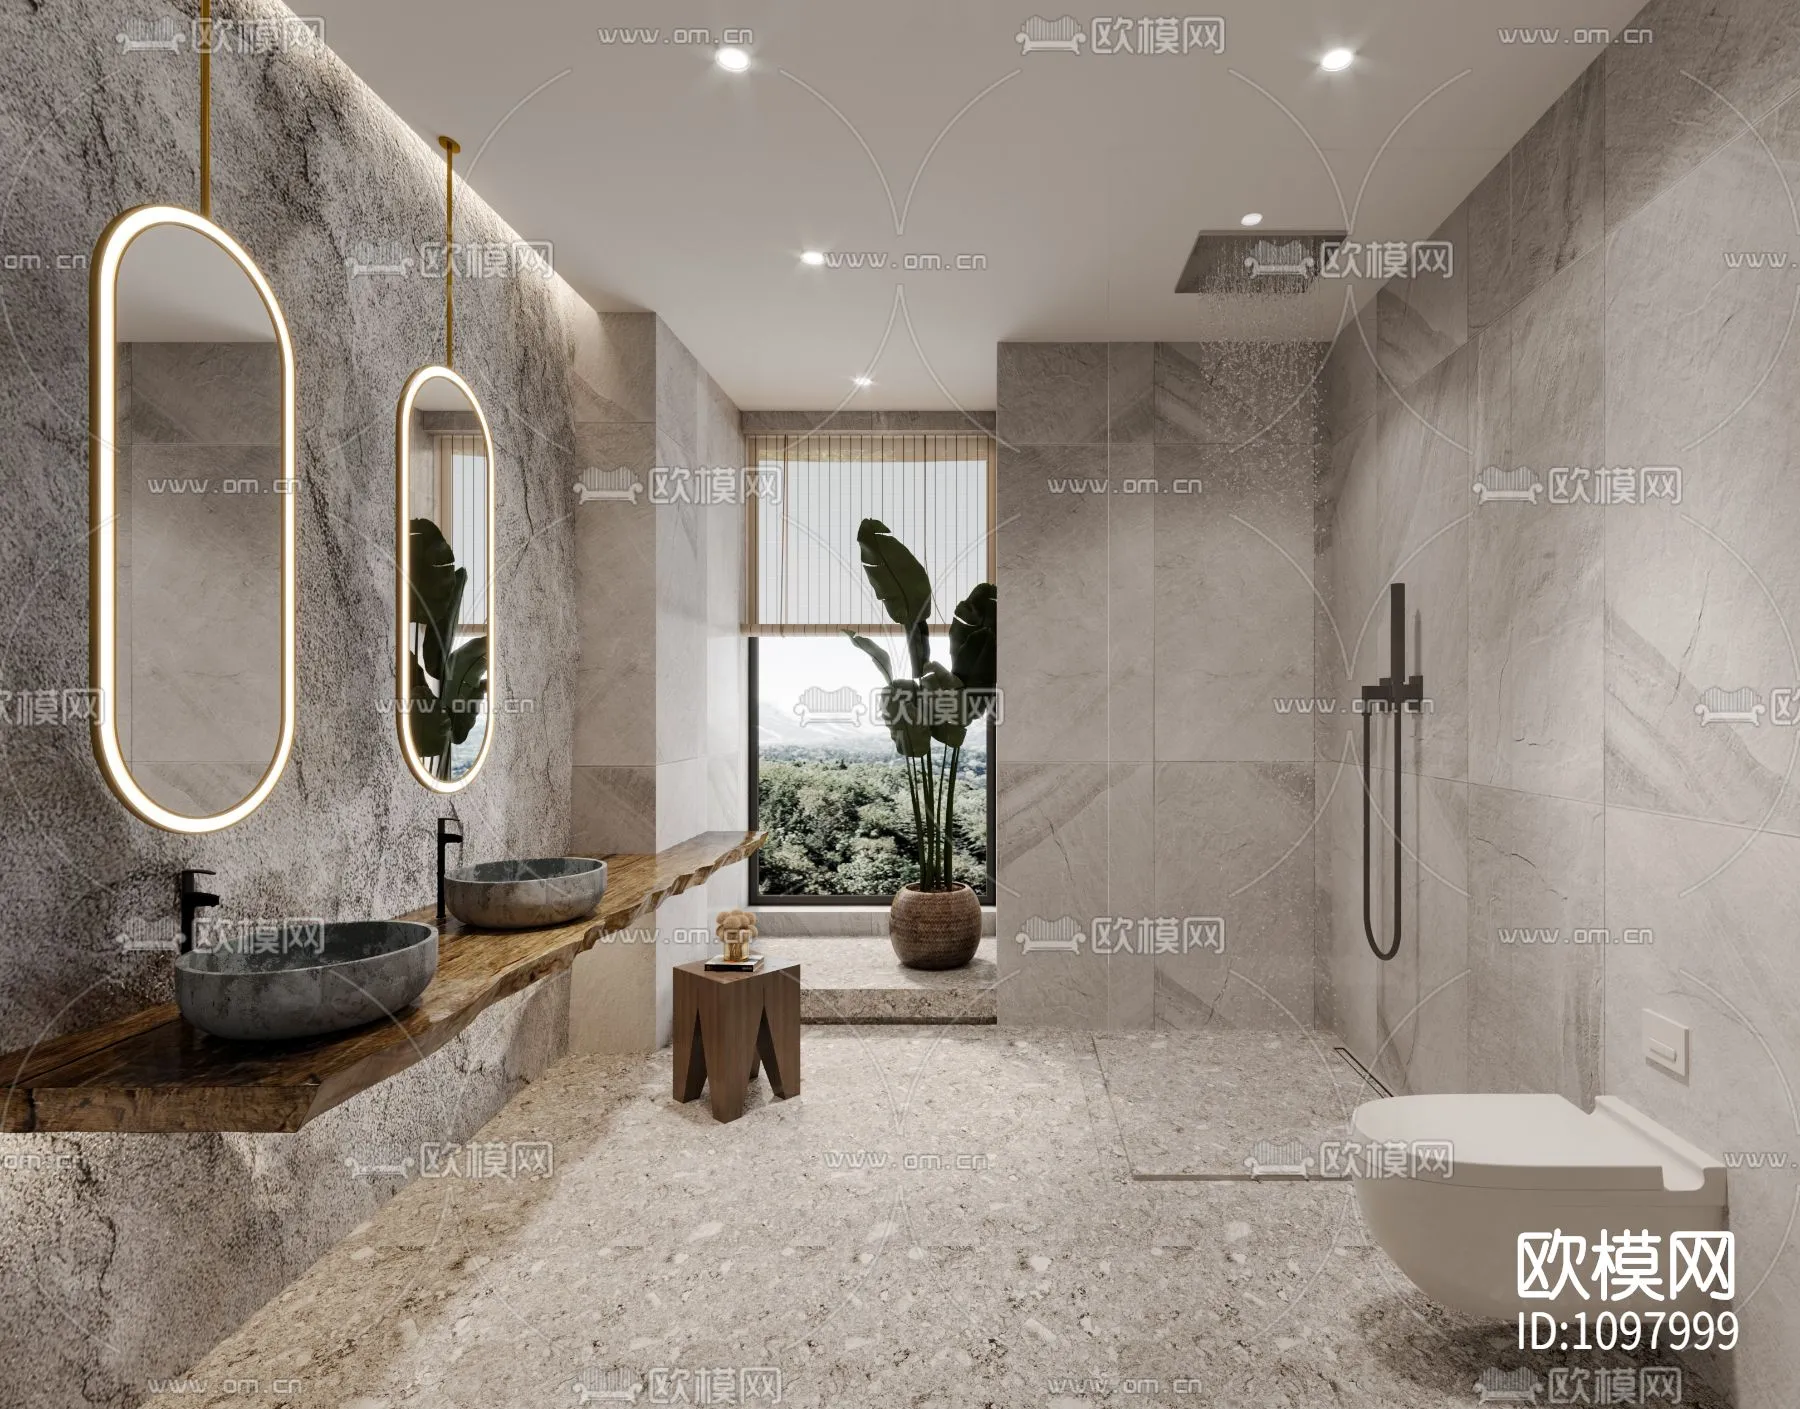 Bathroom 3D Scenes – 0093